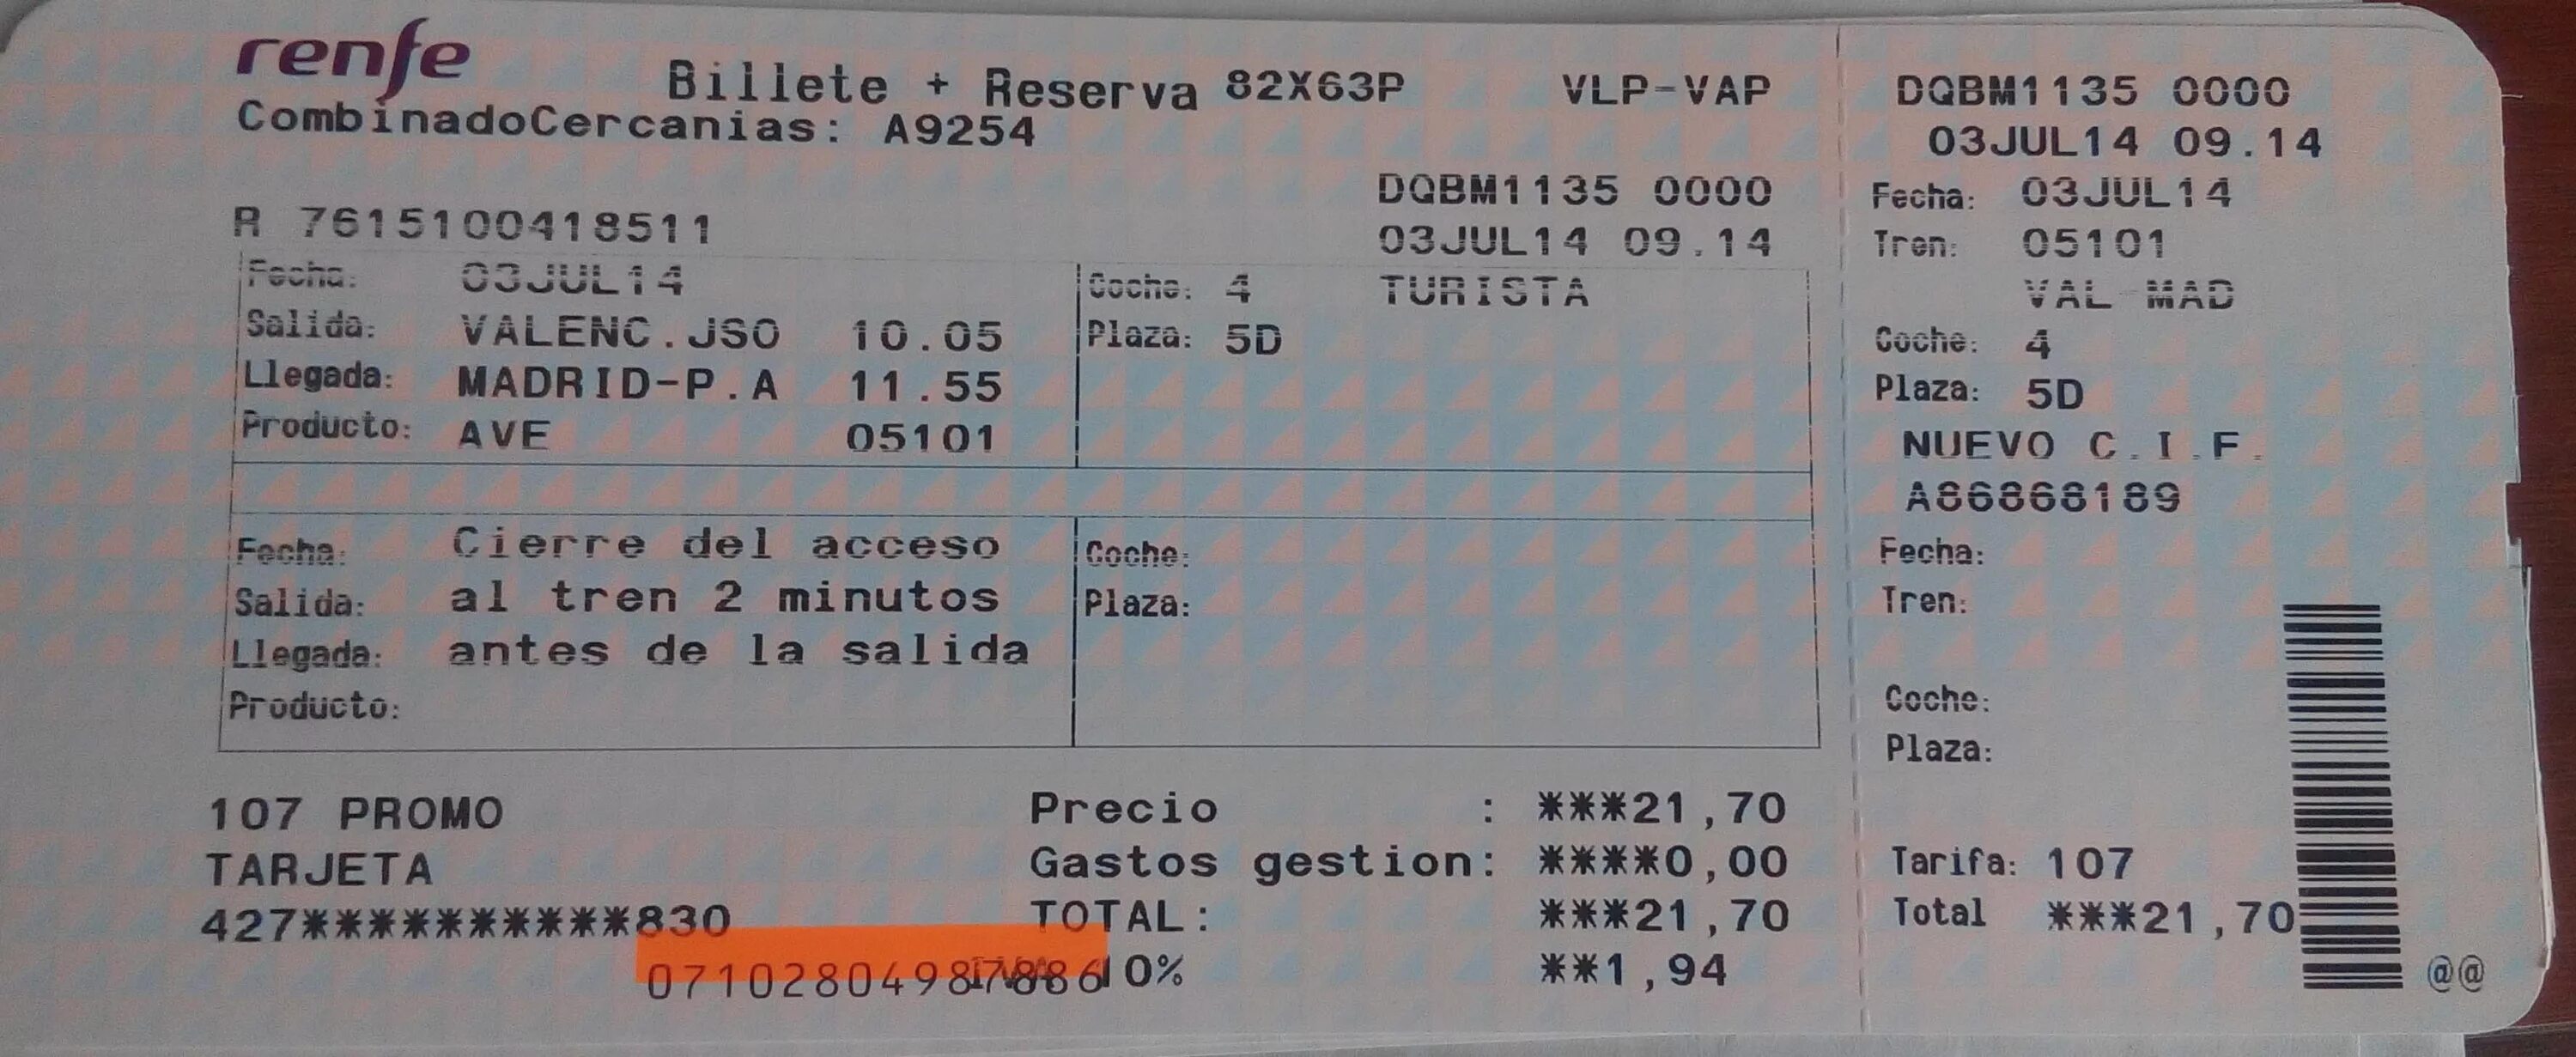 Во сколько выкладывают билеты. Билет на поезд Испания. Билеты в Испанию. Билеты в Испанию фото. Билеты в Испанию из Москвы.